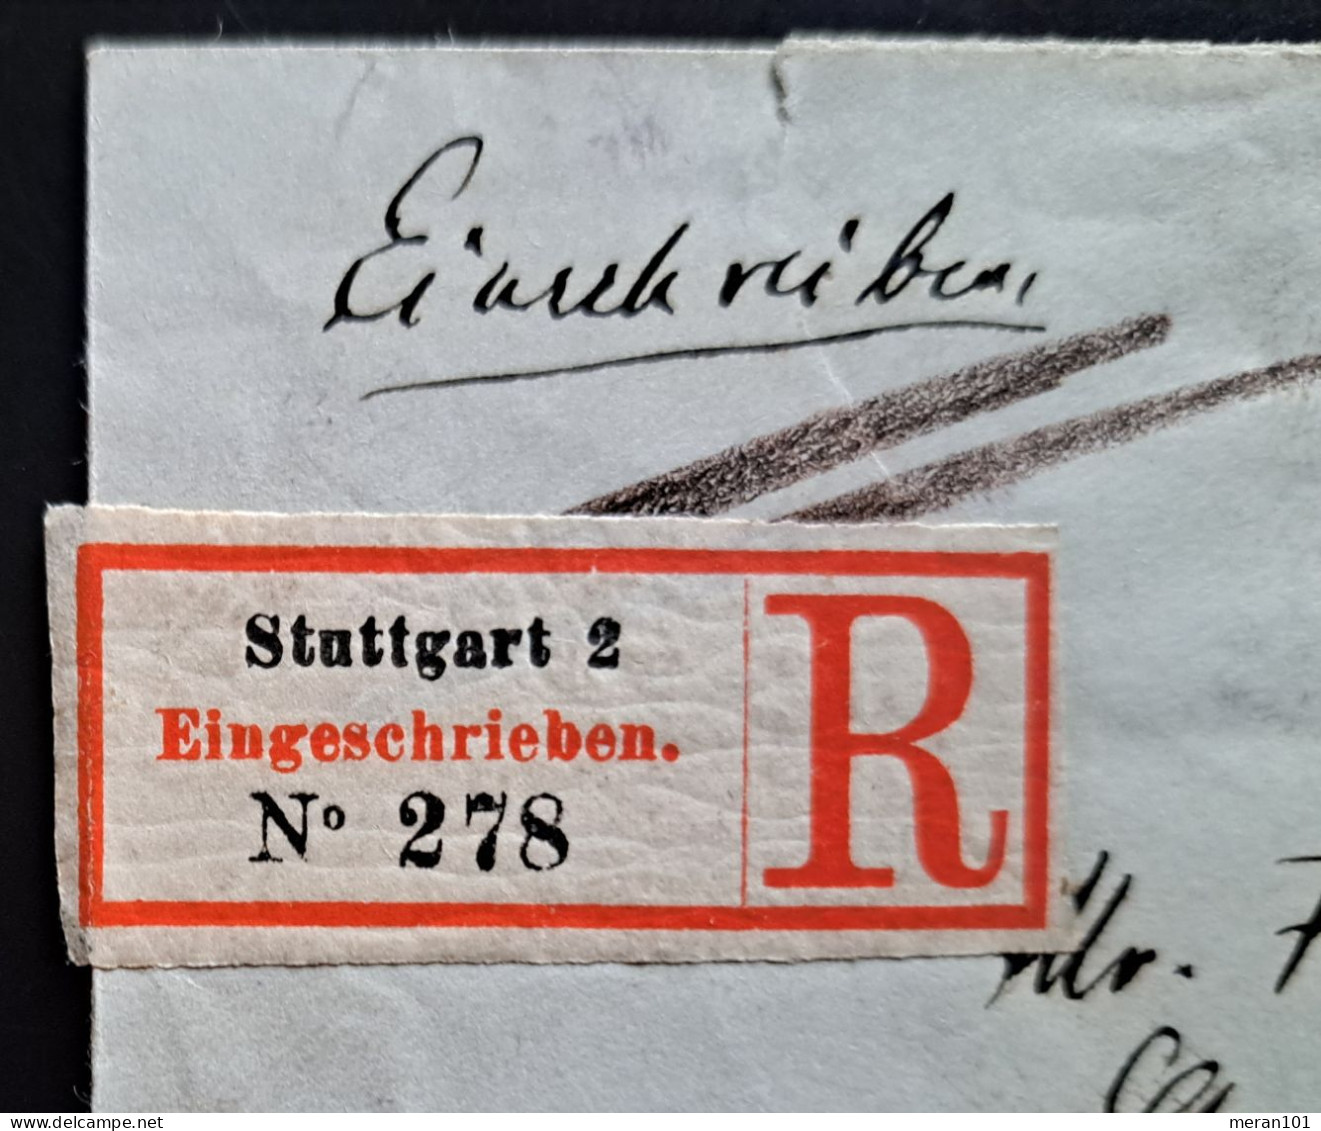 Württemberg 1889, Einschreibe Umschlag Stuttgart Nach Antwerpen, Zusatzfrankatu - Brieven En Documenten